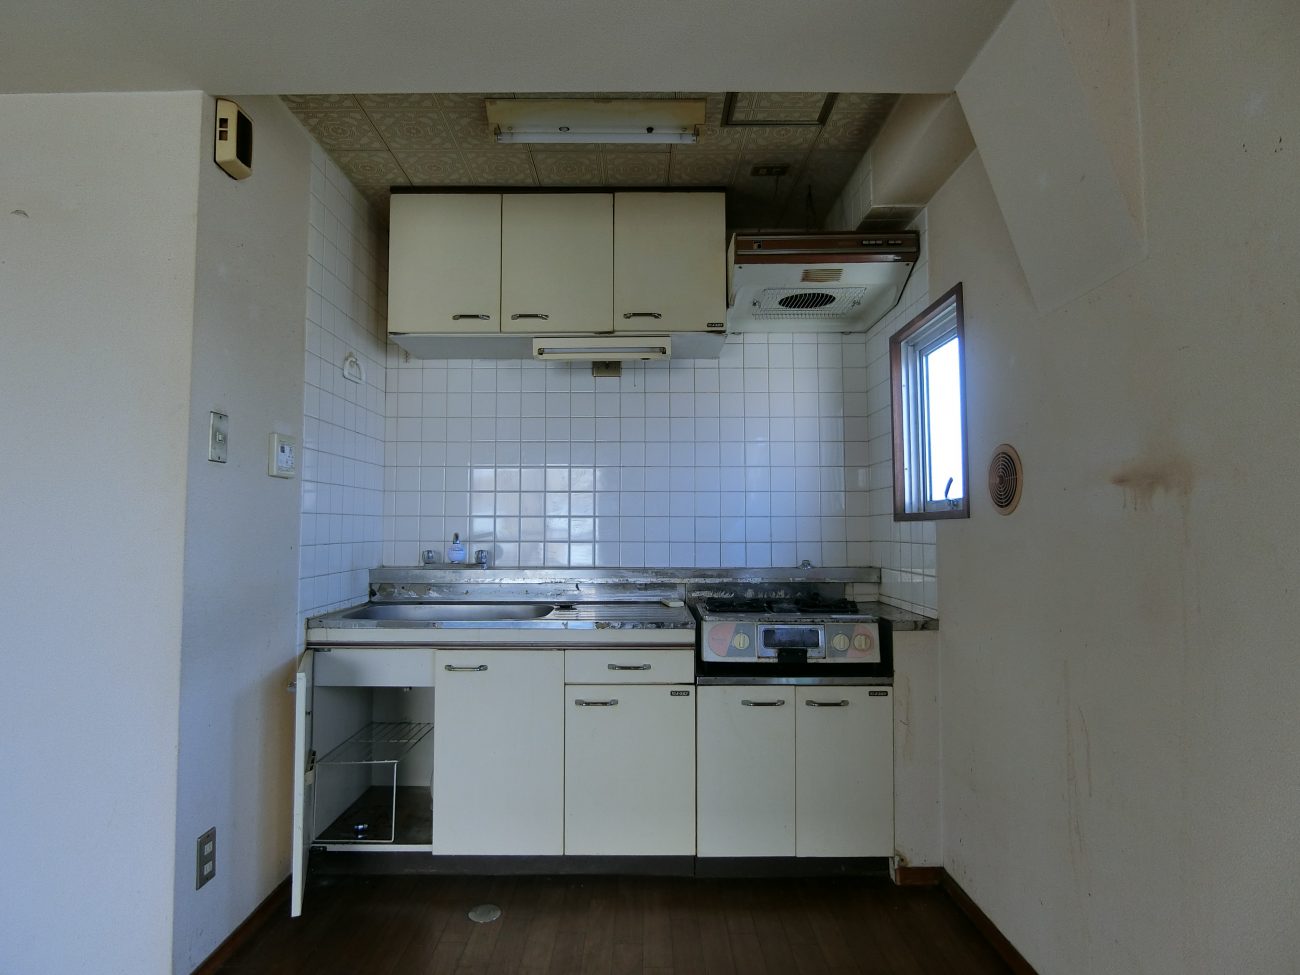 西荻窪 築38年 RC 28m2 ヘリンボーン床と造作キッチンが特長のナチュラルリノベの画像